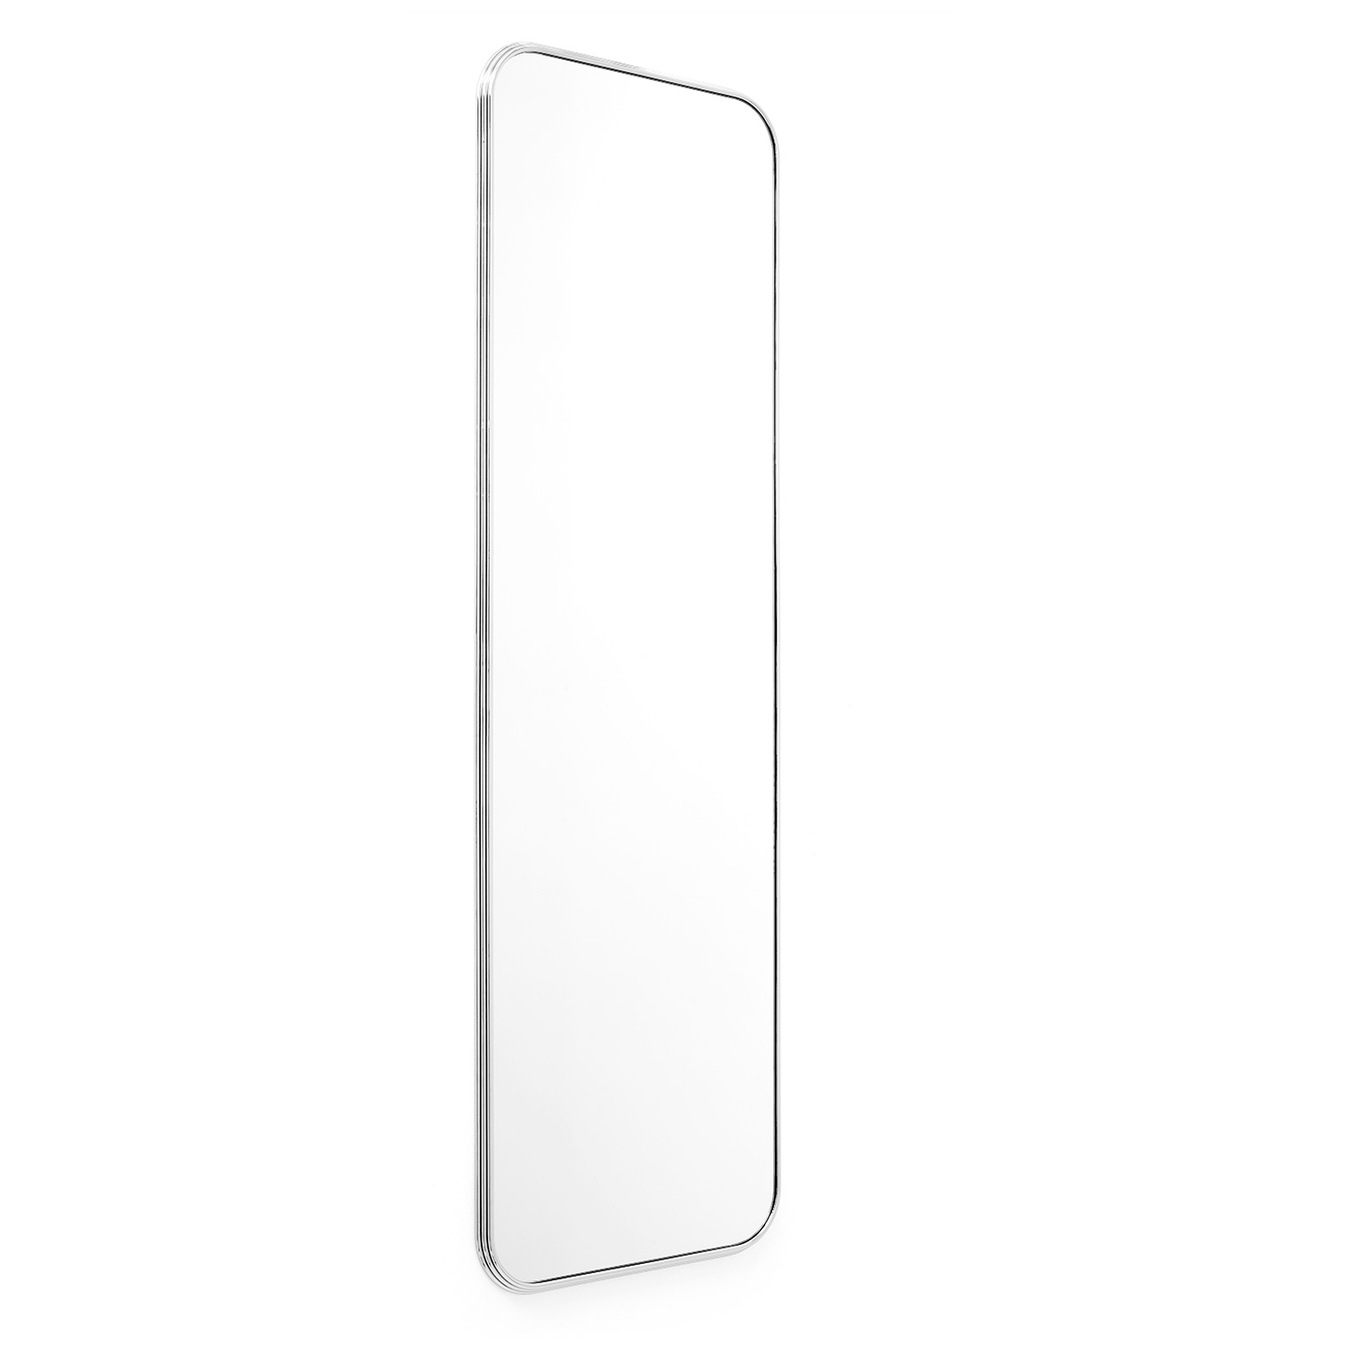 Sillon Spegel SH7 60x190 cm, Krom